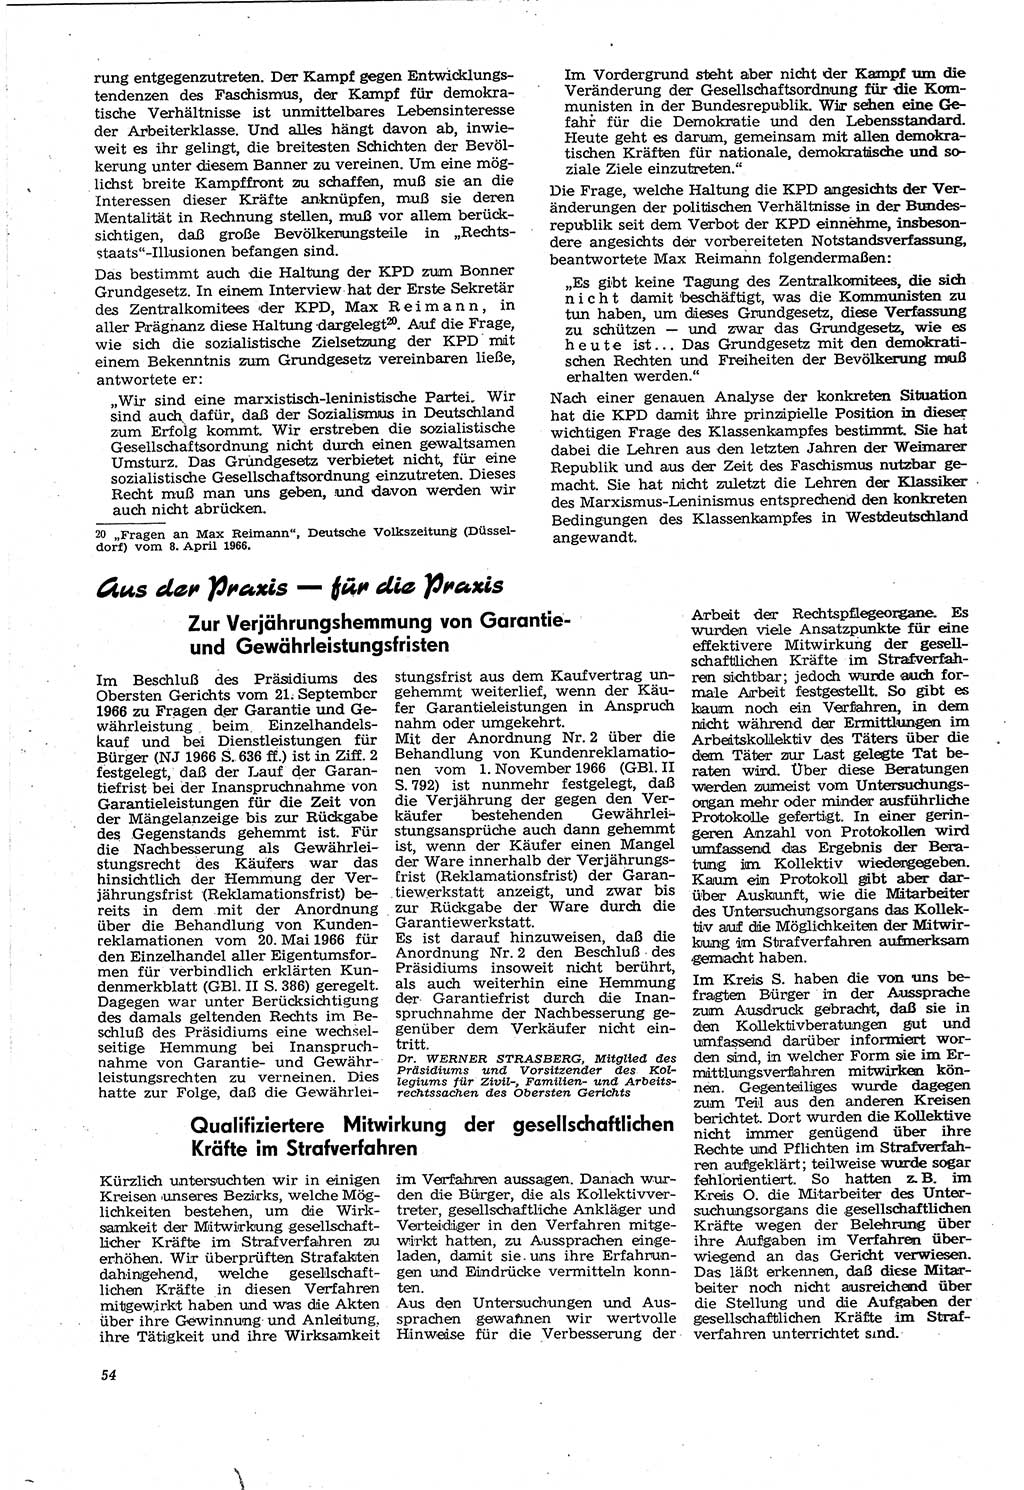 Neue Justiz (NJ), Zeitschrift für Recht und Rechtswissenschaft [Deutsche Demokratische Republik (DDR)], 21. Jahrgang 1967, Seite 54 (NJ DDR 1967, S. 54)